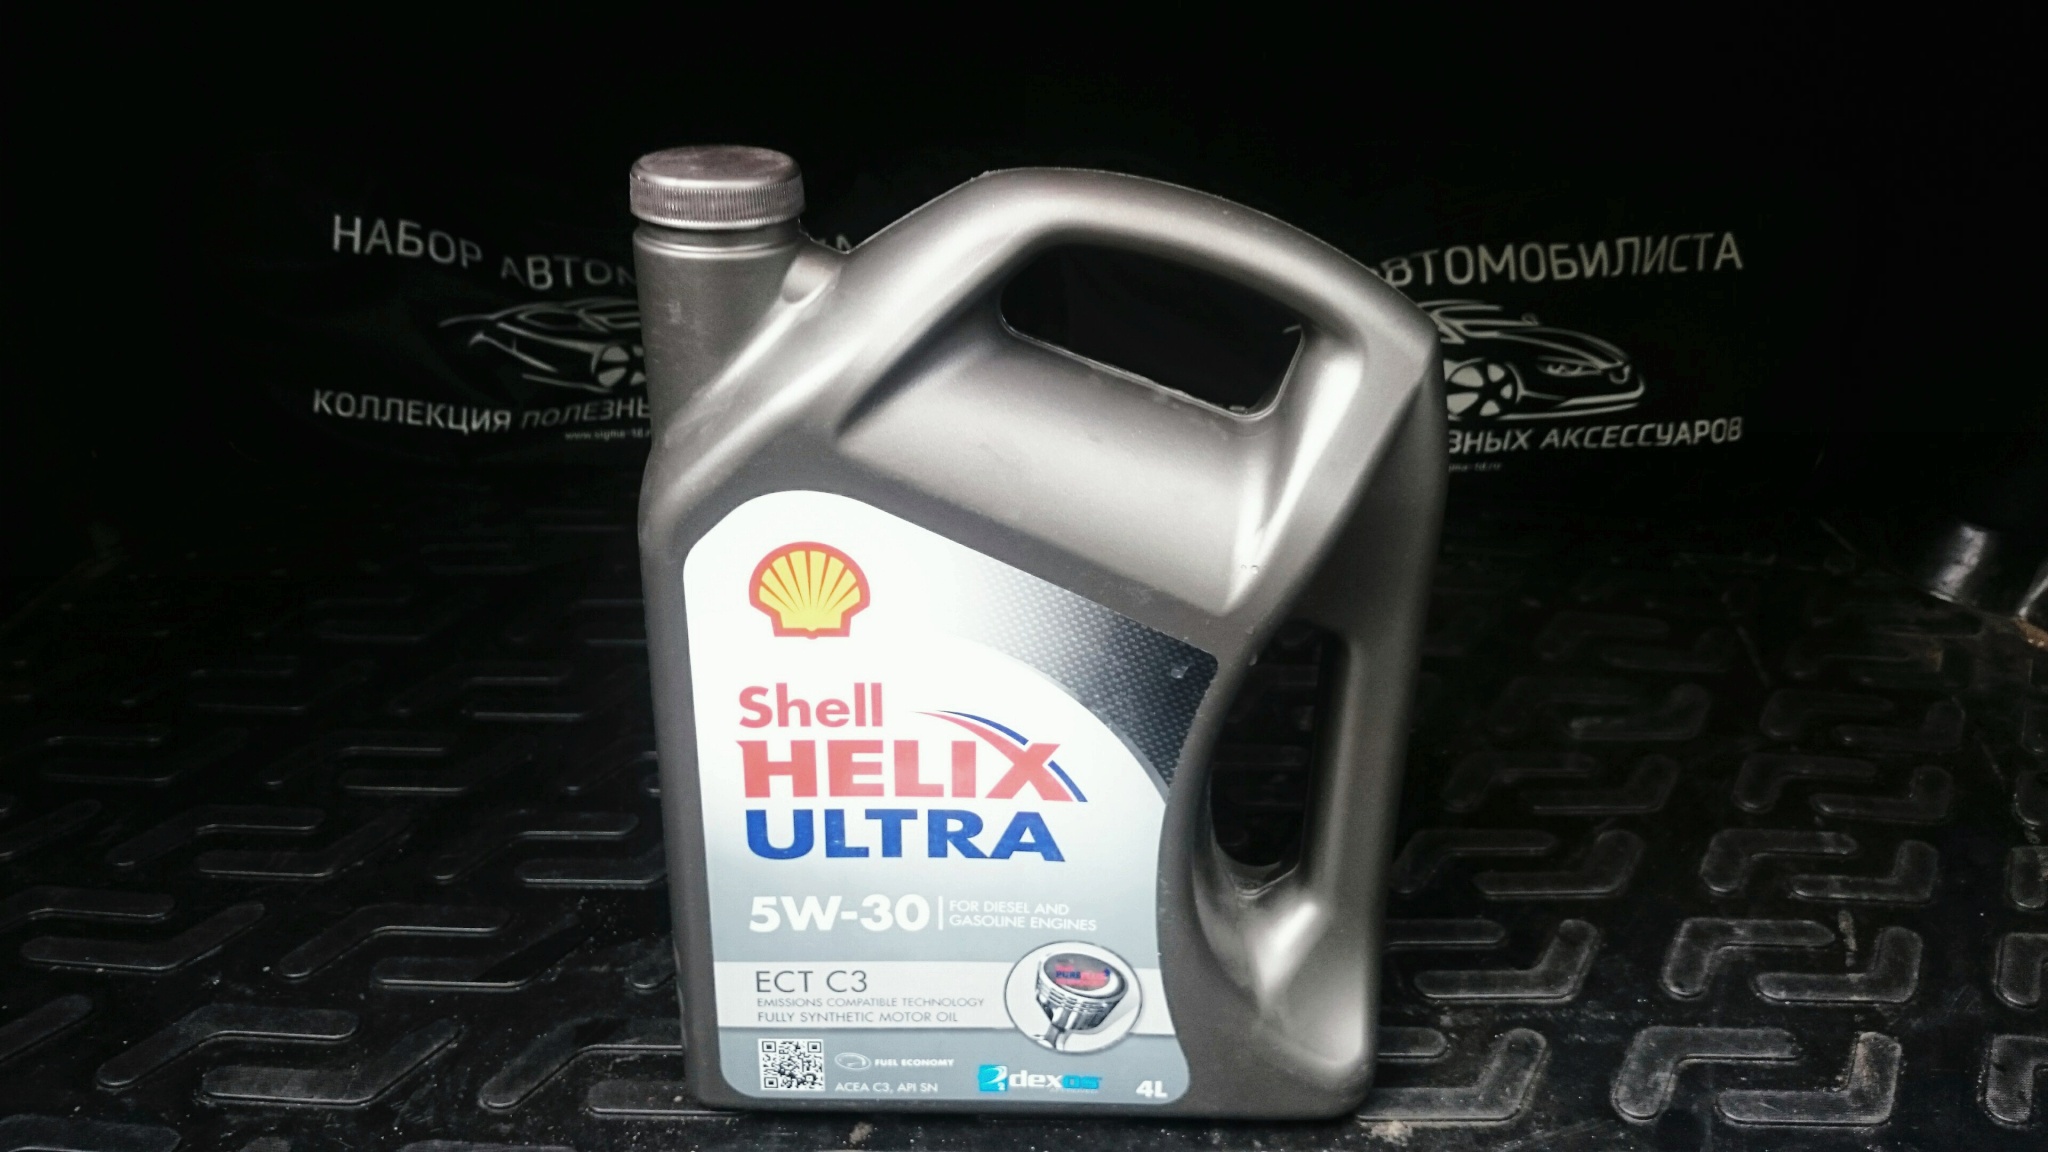 Моторное масло 5w30 шевроле. Shell Helix Ultra ect c3 5w-30 4 л. Helix Ultra ect c3 5w-30. Shell Helix Ultra ect 5w30 c3. Shell Helix Ultra ect c3 5w30 200 литров.